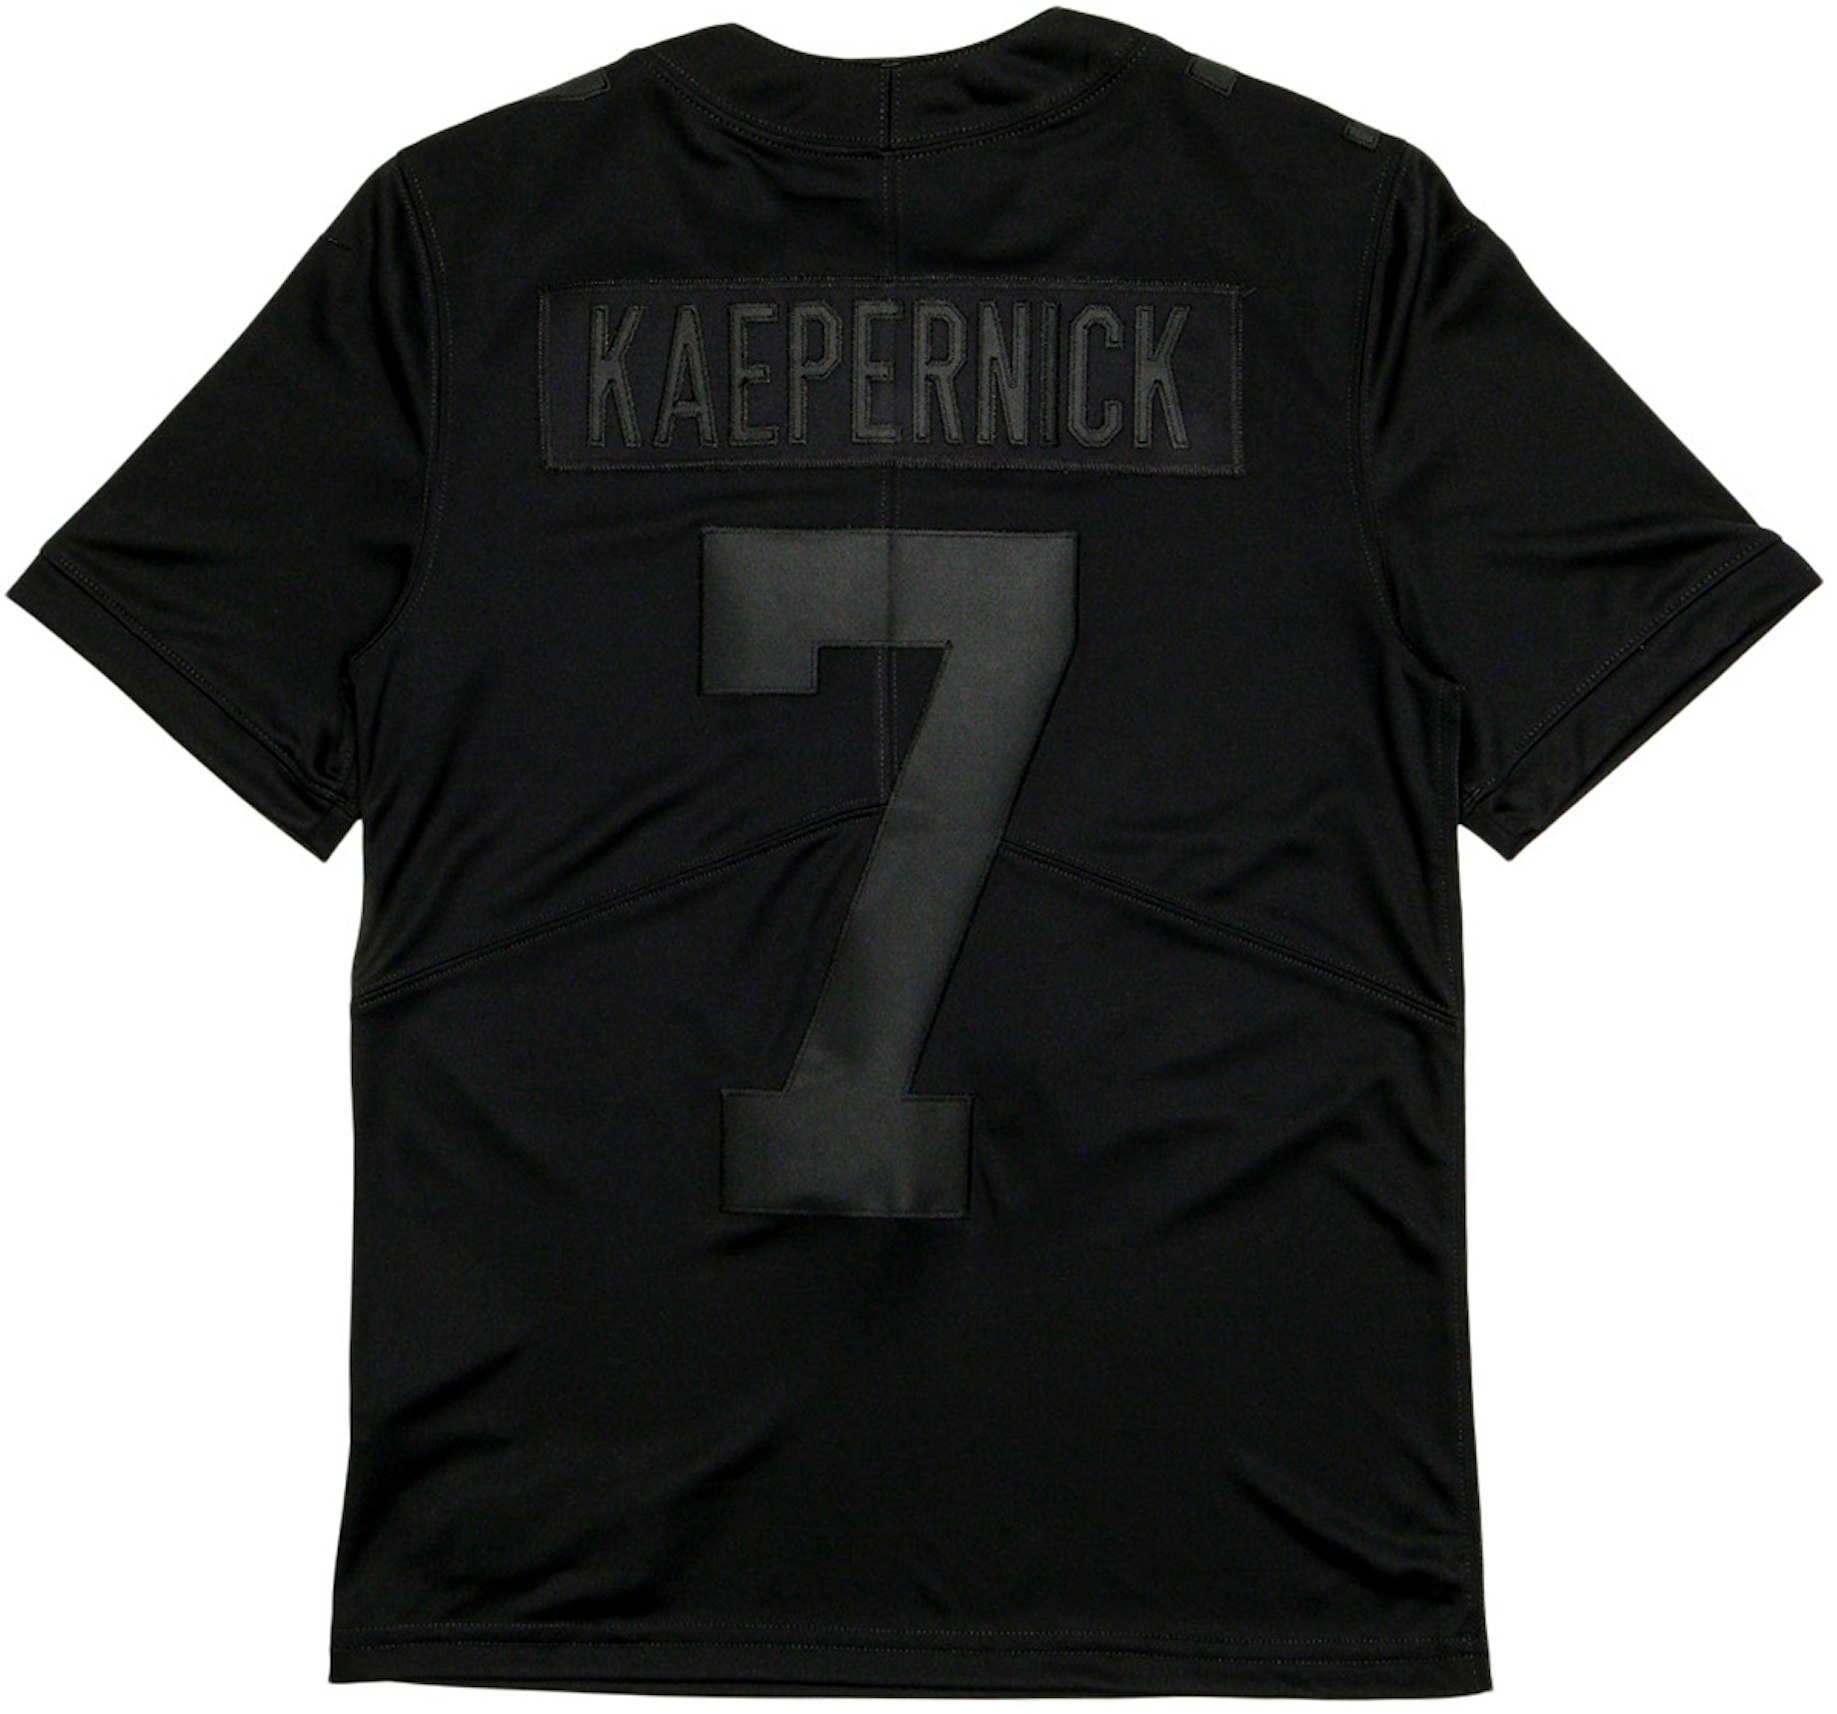 Nike Kaepernick Icon 2.0 Jersey Black - FW20 Men's US